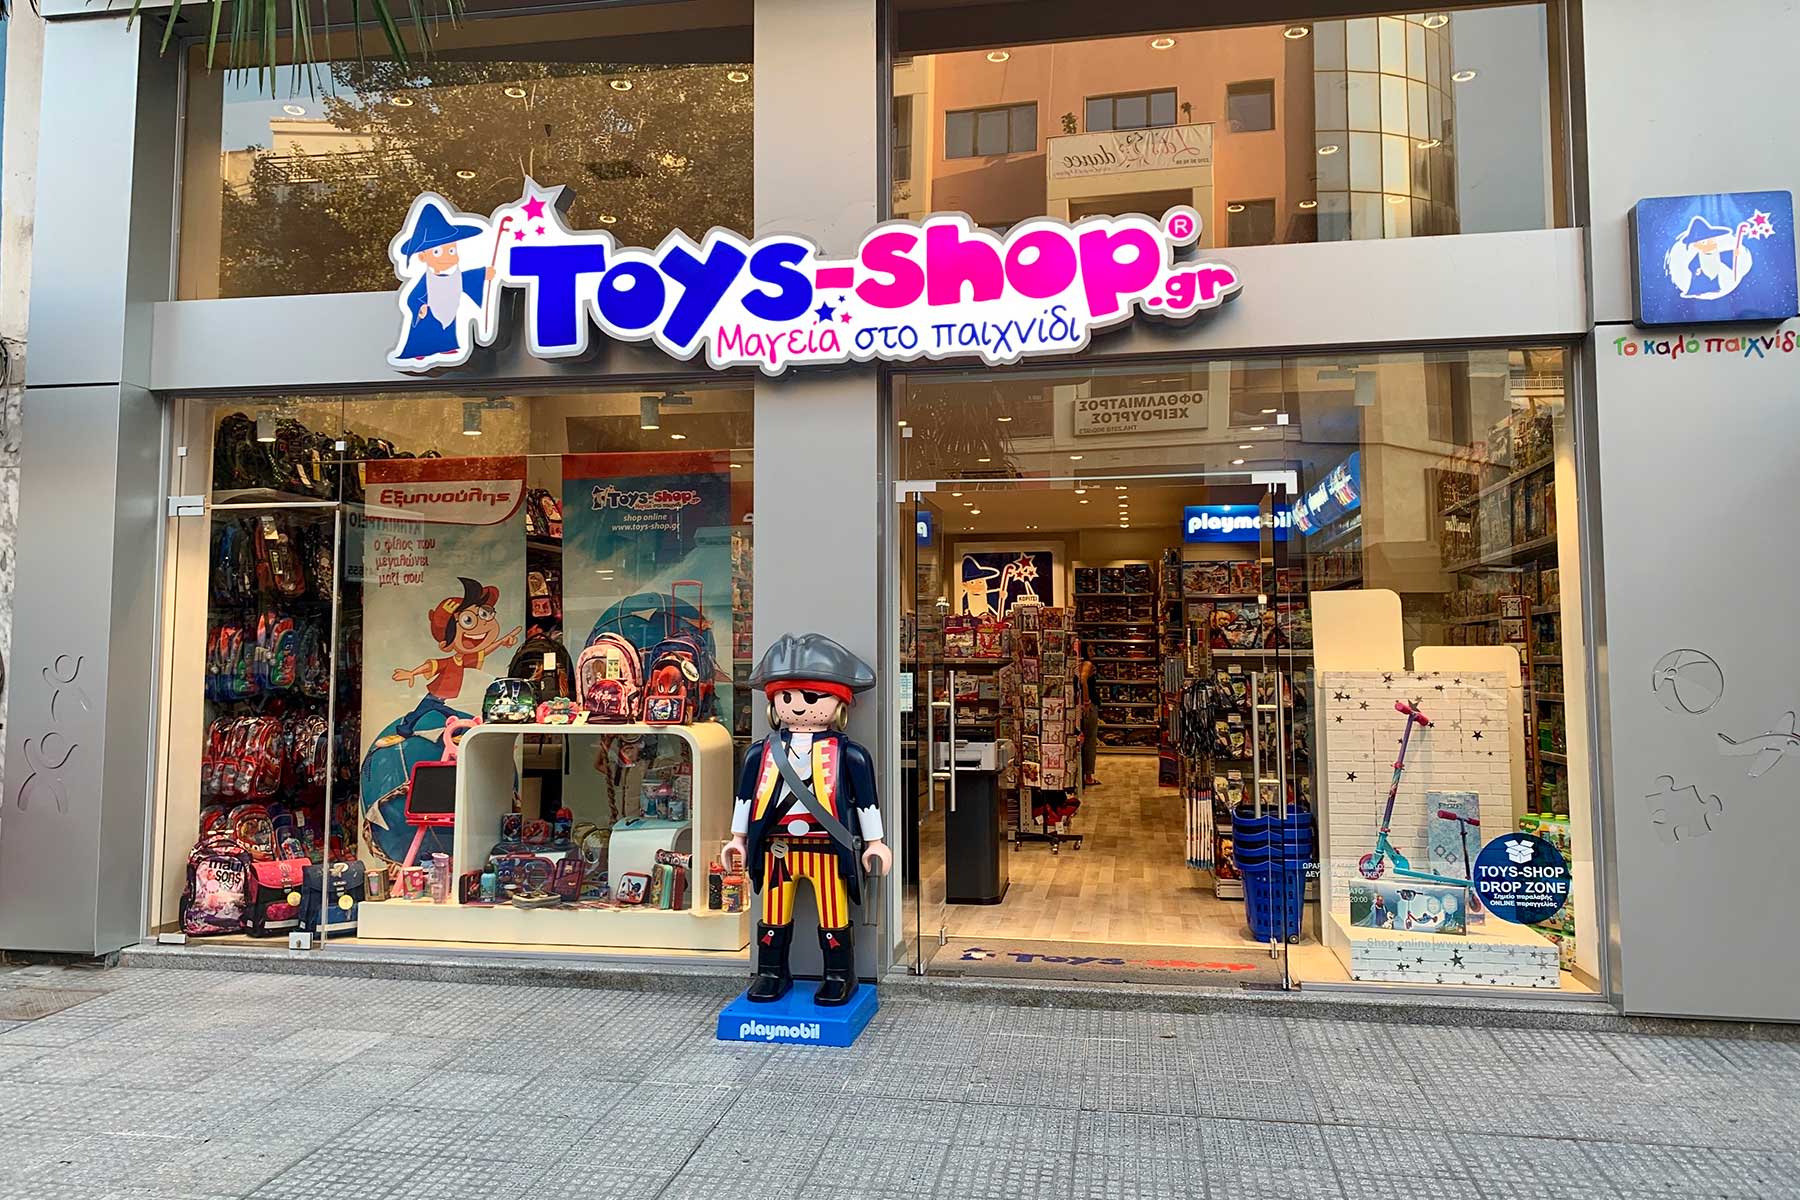 Toys-shop Αριστοτέλους - www.toys-shop.gr